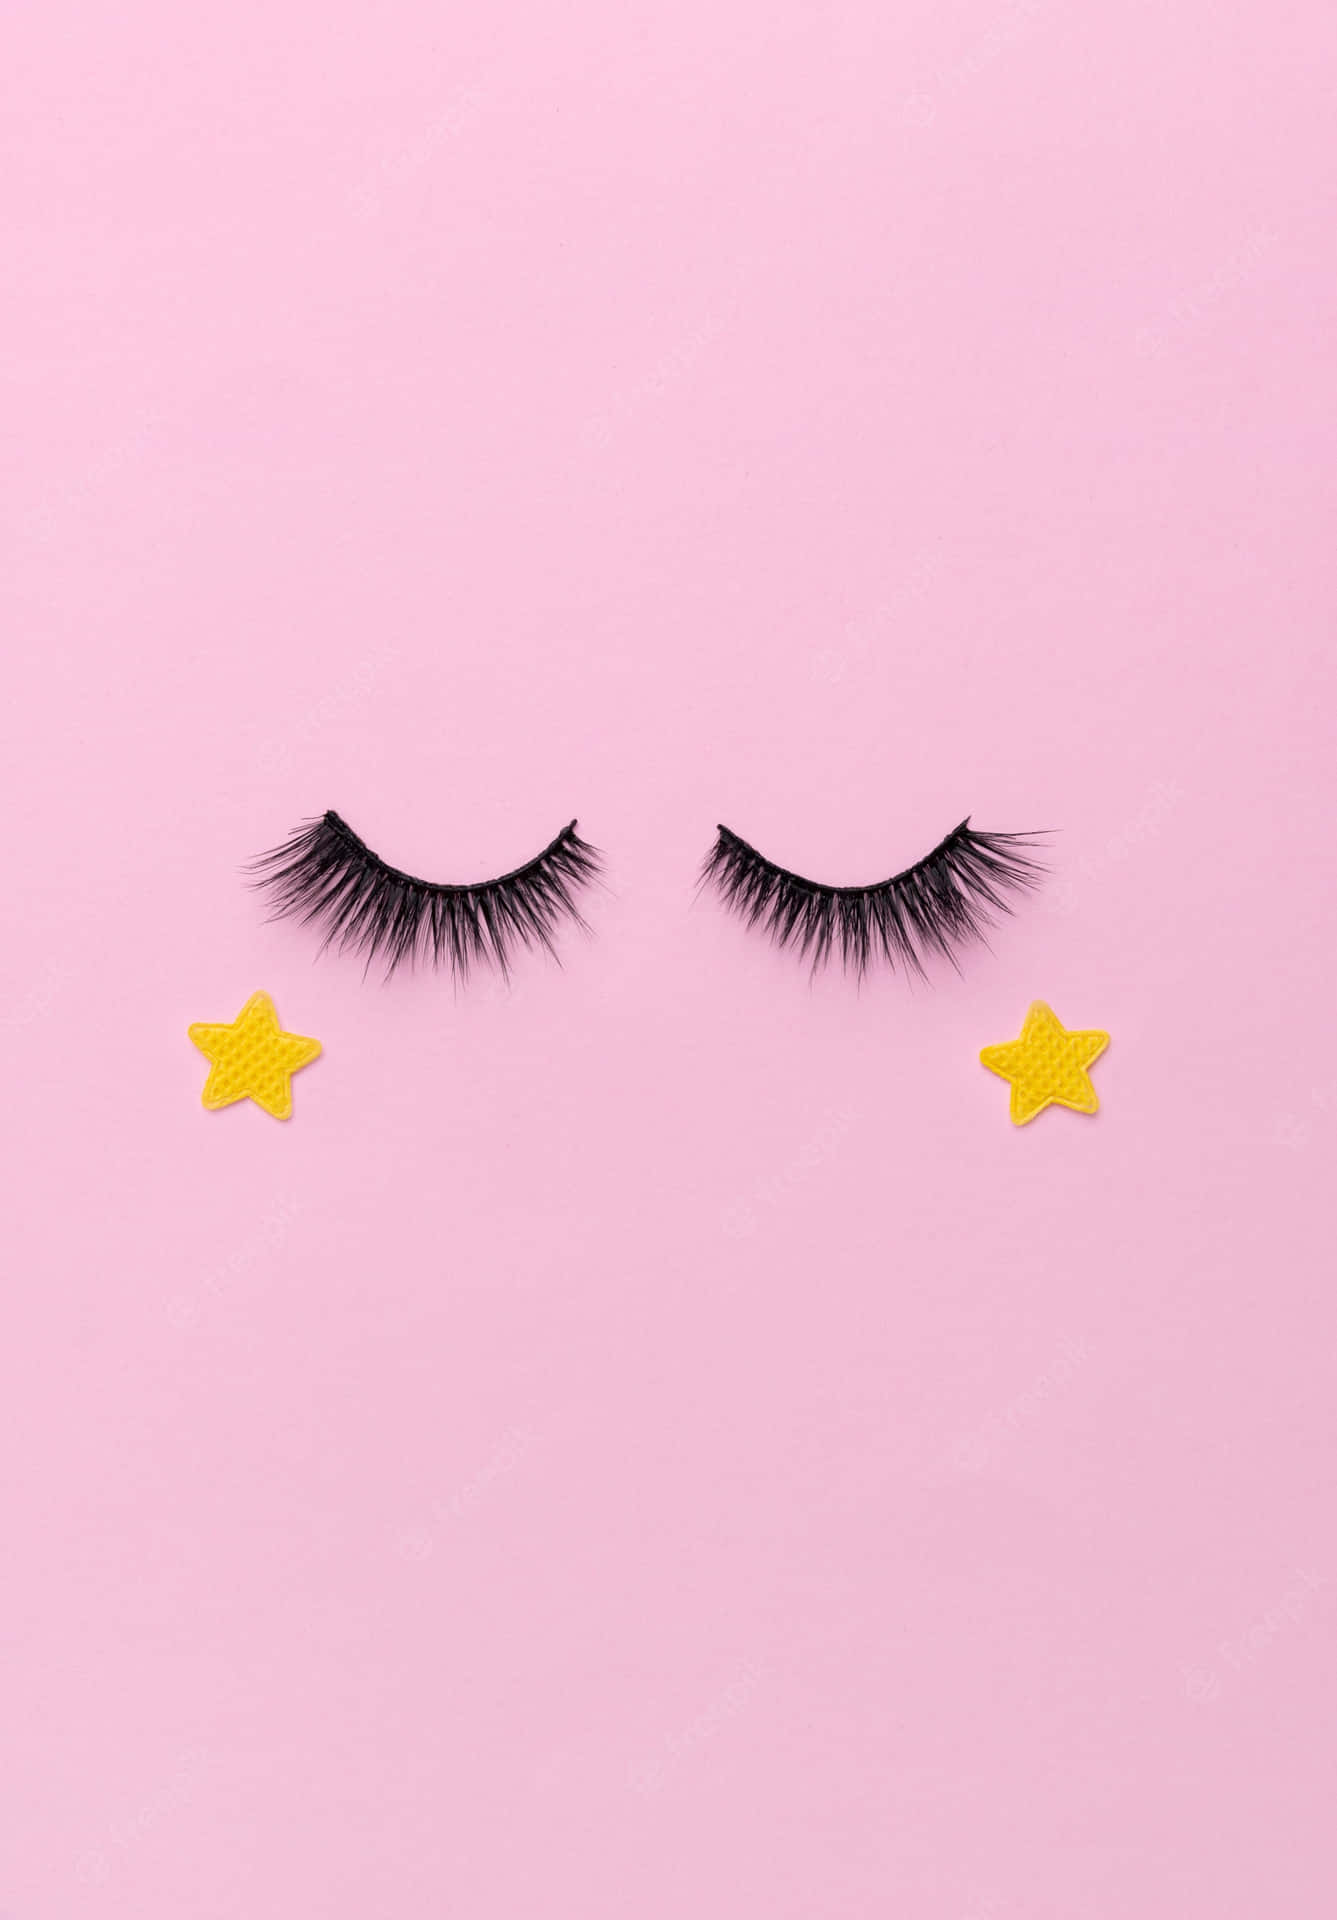 Einpaar Falsche Wimpern Mit Sternen Auf Einem Rosa Hintergrund. Wallpaper